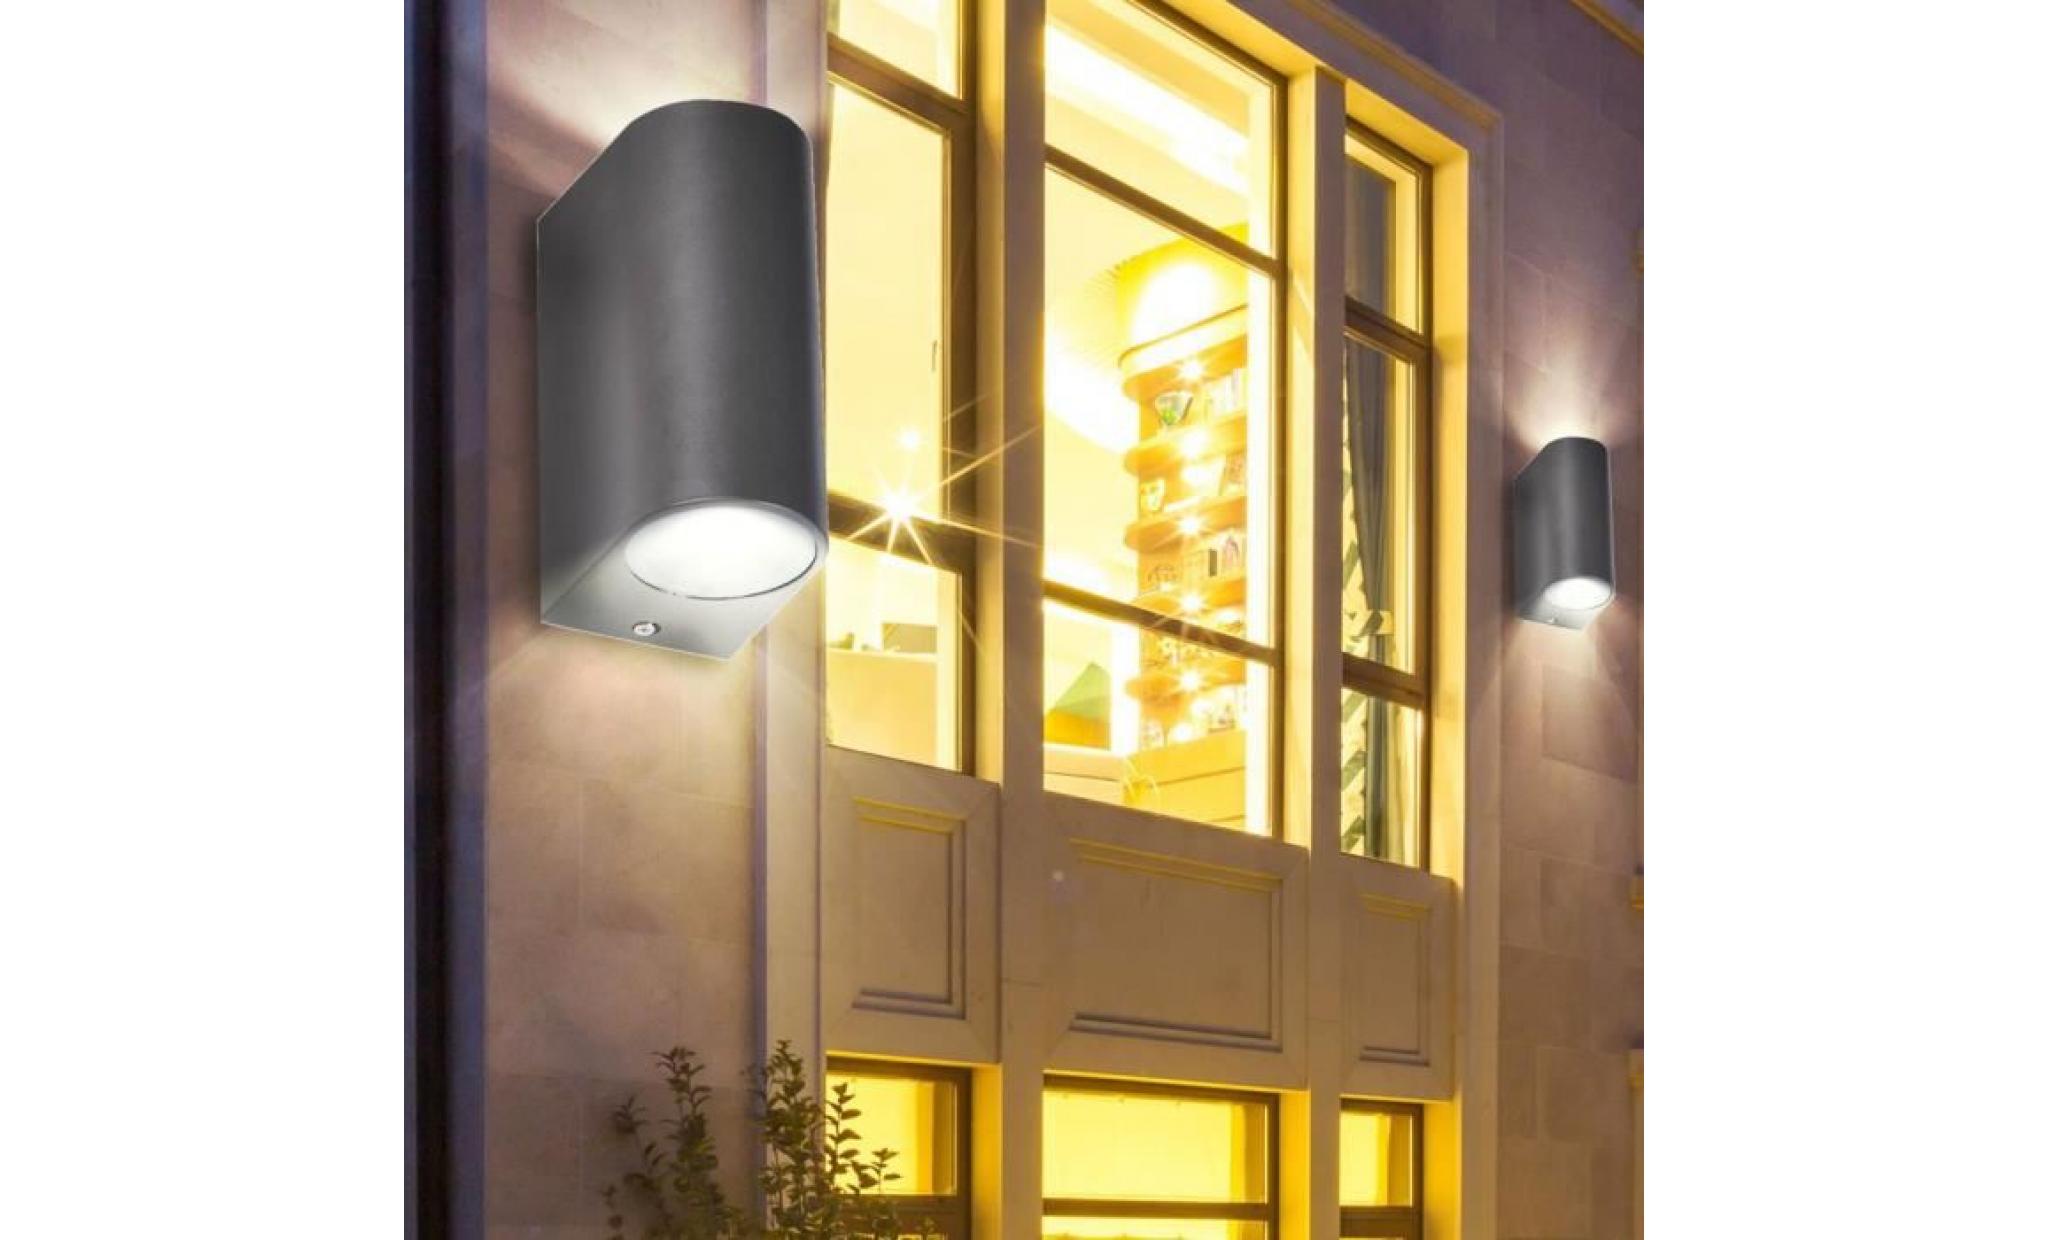 éclairages jardin garage luminaires mur lampe extérieur alu noir dans l'ensemble ampoules á led pas cher